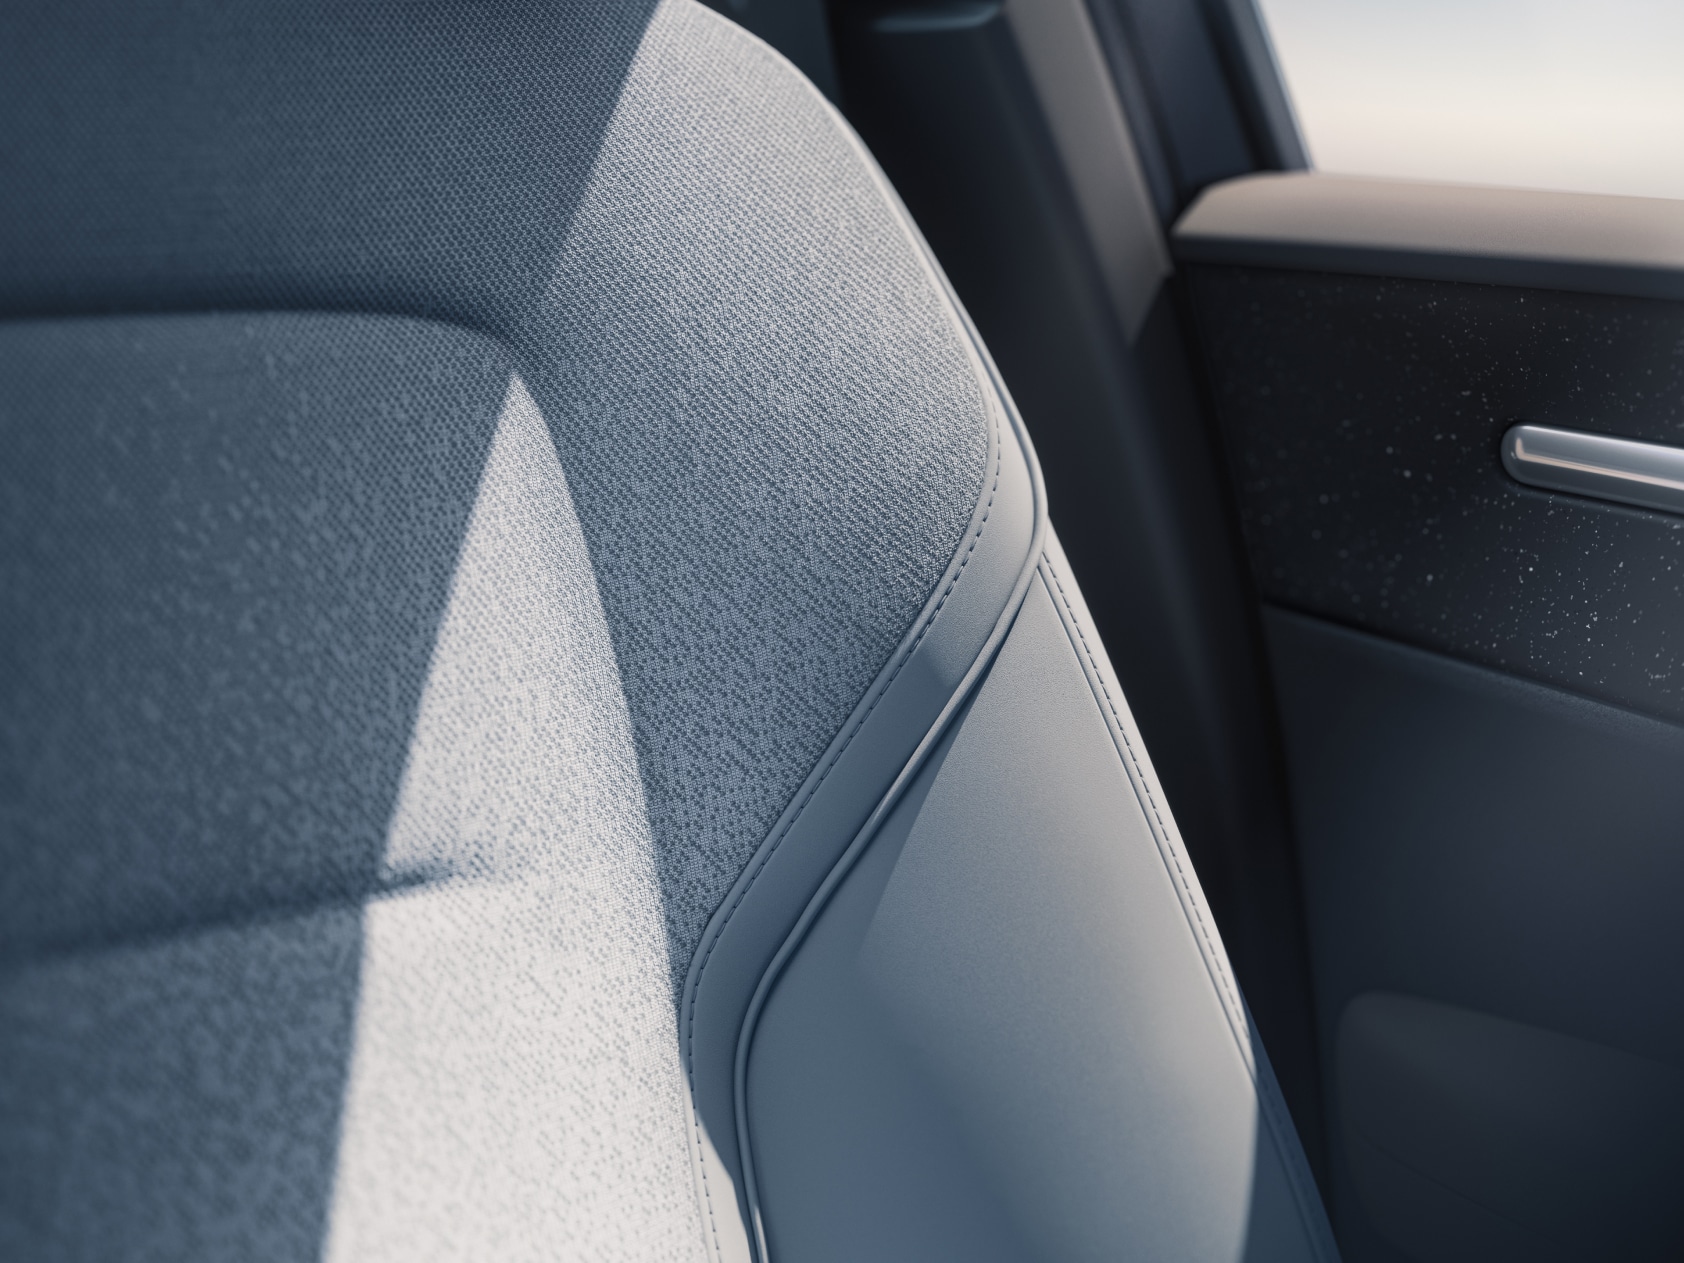 Оббивка передніх сидінь EX30 у темі дизайну інтер’єру під назвою Breeze, великий план.